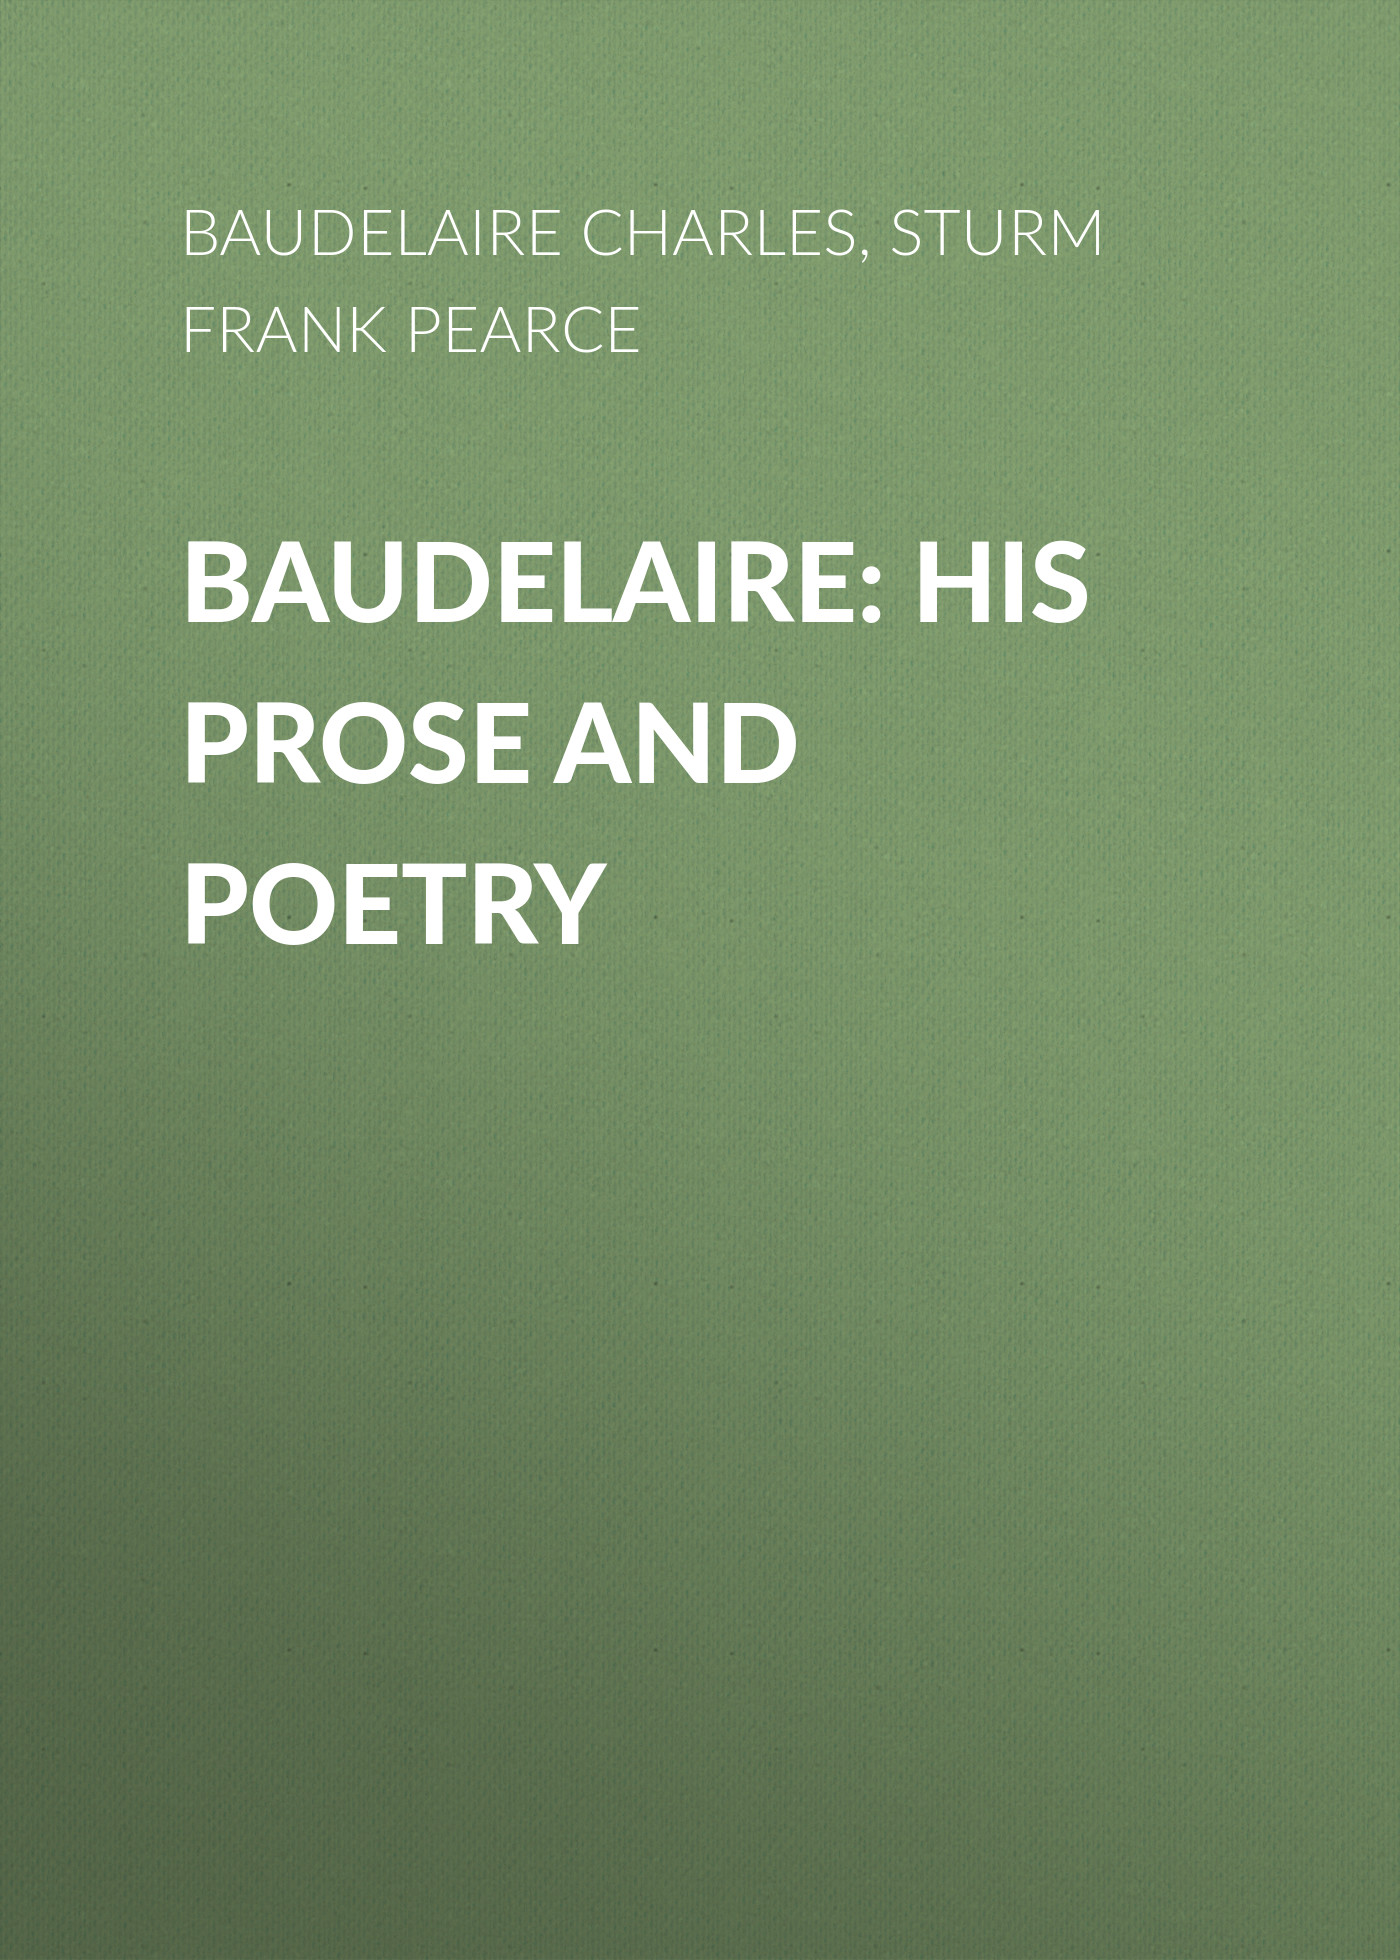 Книга Baudelaire: His Prose and Poetry из серии , созданная Charles Baudelaire, Frank Sturms, может относится к жанру Зарубежная старинная литература, Зарубежная классика. Стоимость электронной книги Baudelaire: His Prose and Poetry с идентификатором 24168212 составляет 0 руб.